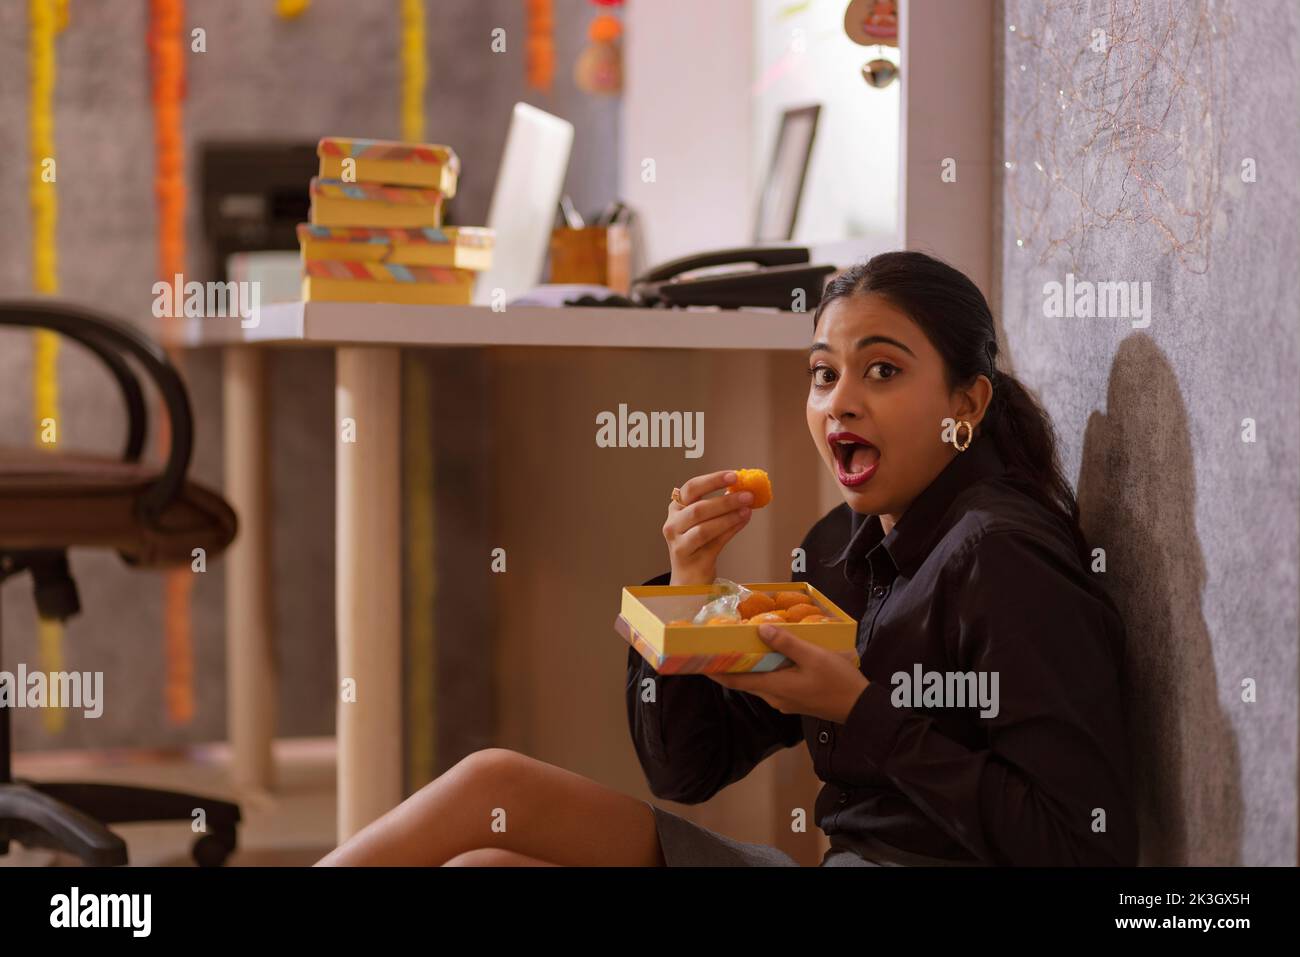 Empleada femenina comiendo dulces en la oficina durante la celebración de Diwali Foto de stock